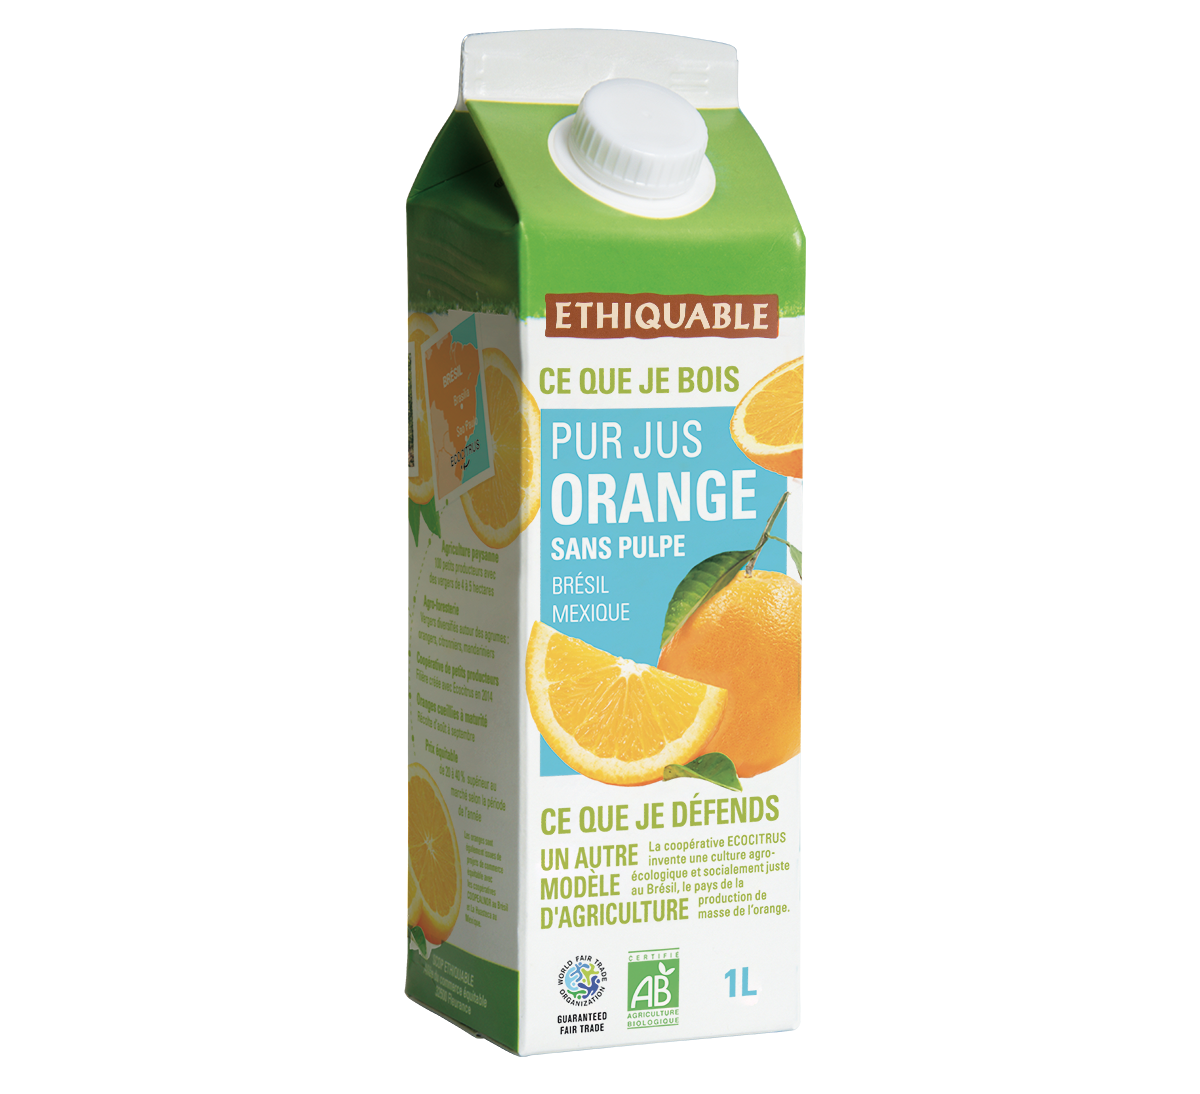 Pur jus orange bio du Brésil issu du commerce équitable, sans pulpe.